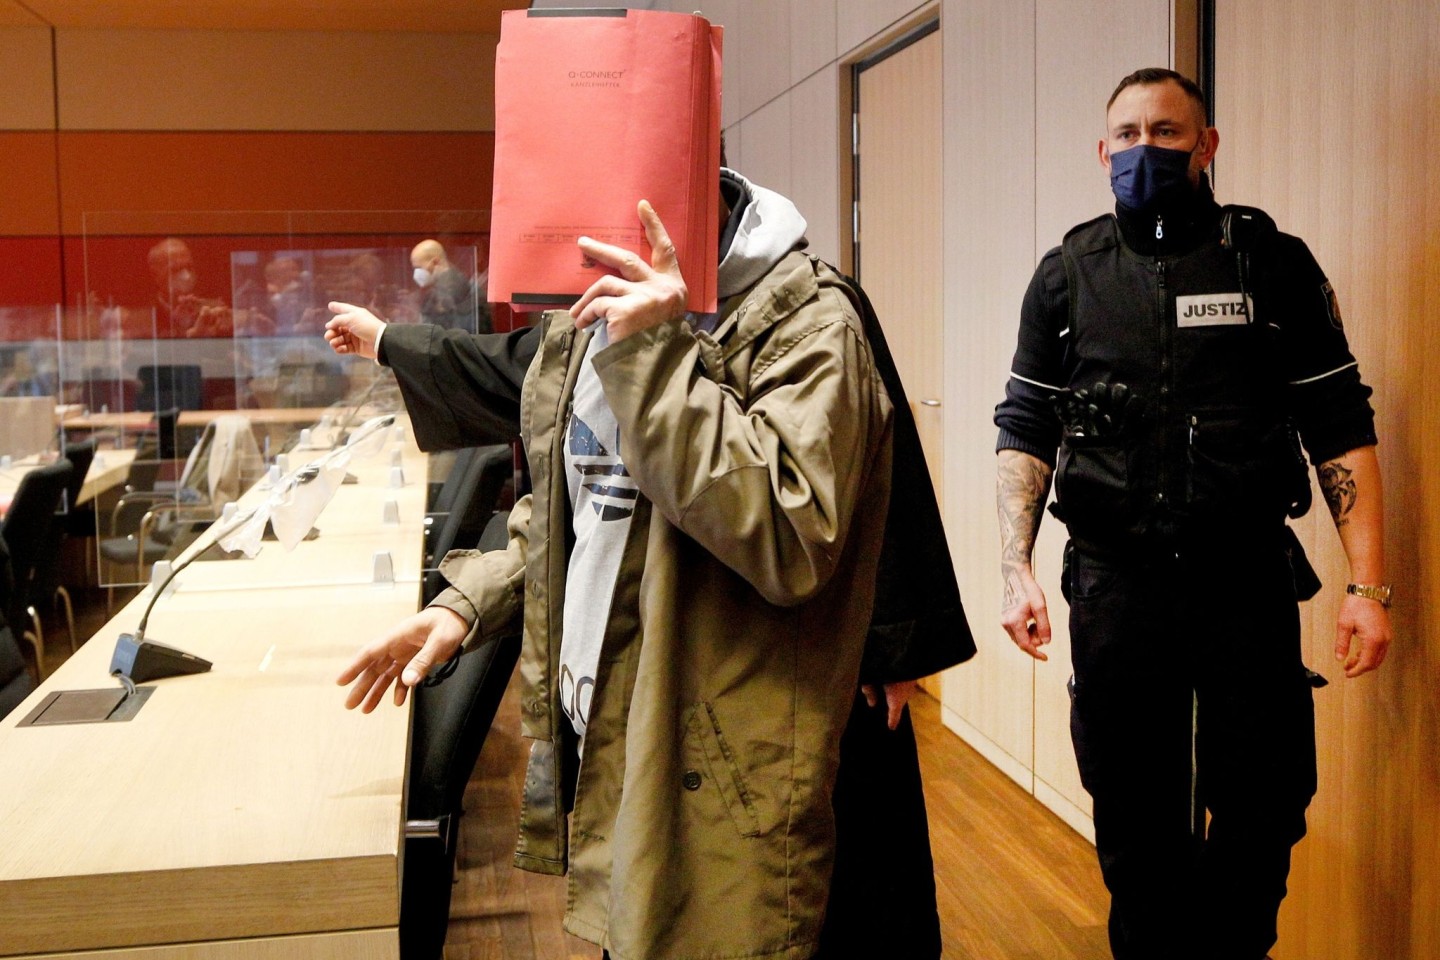 Der Verdächtige im Raubmord-Prozess in Bochum ist freigesprochen worden. (Archivbild)